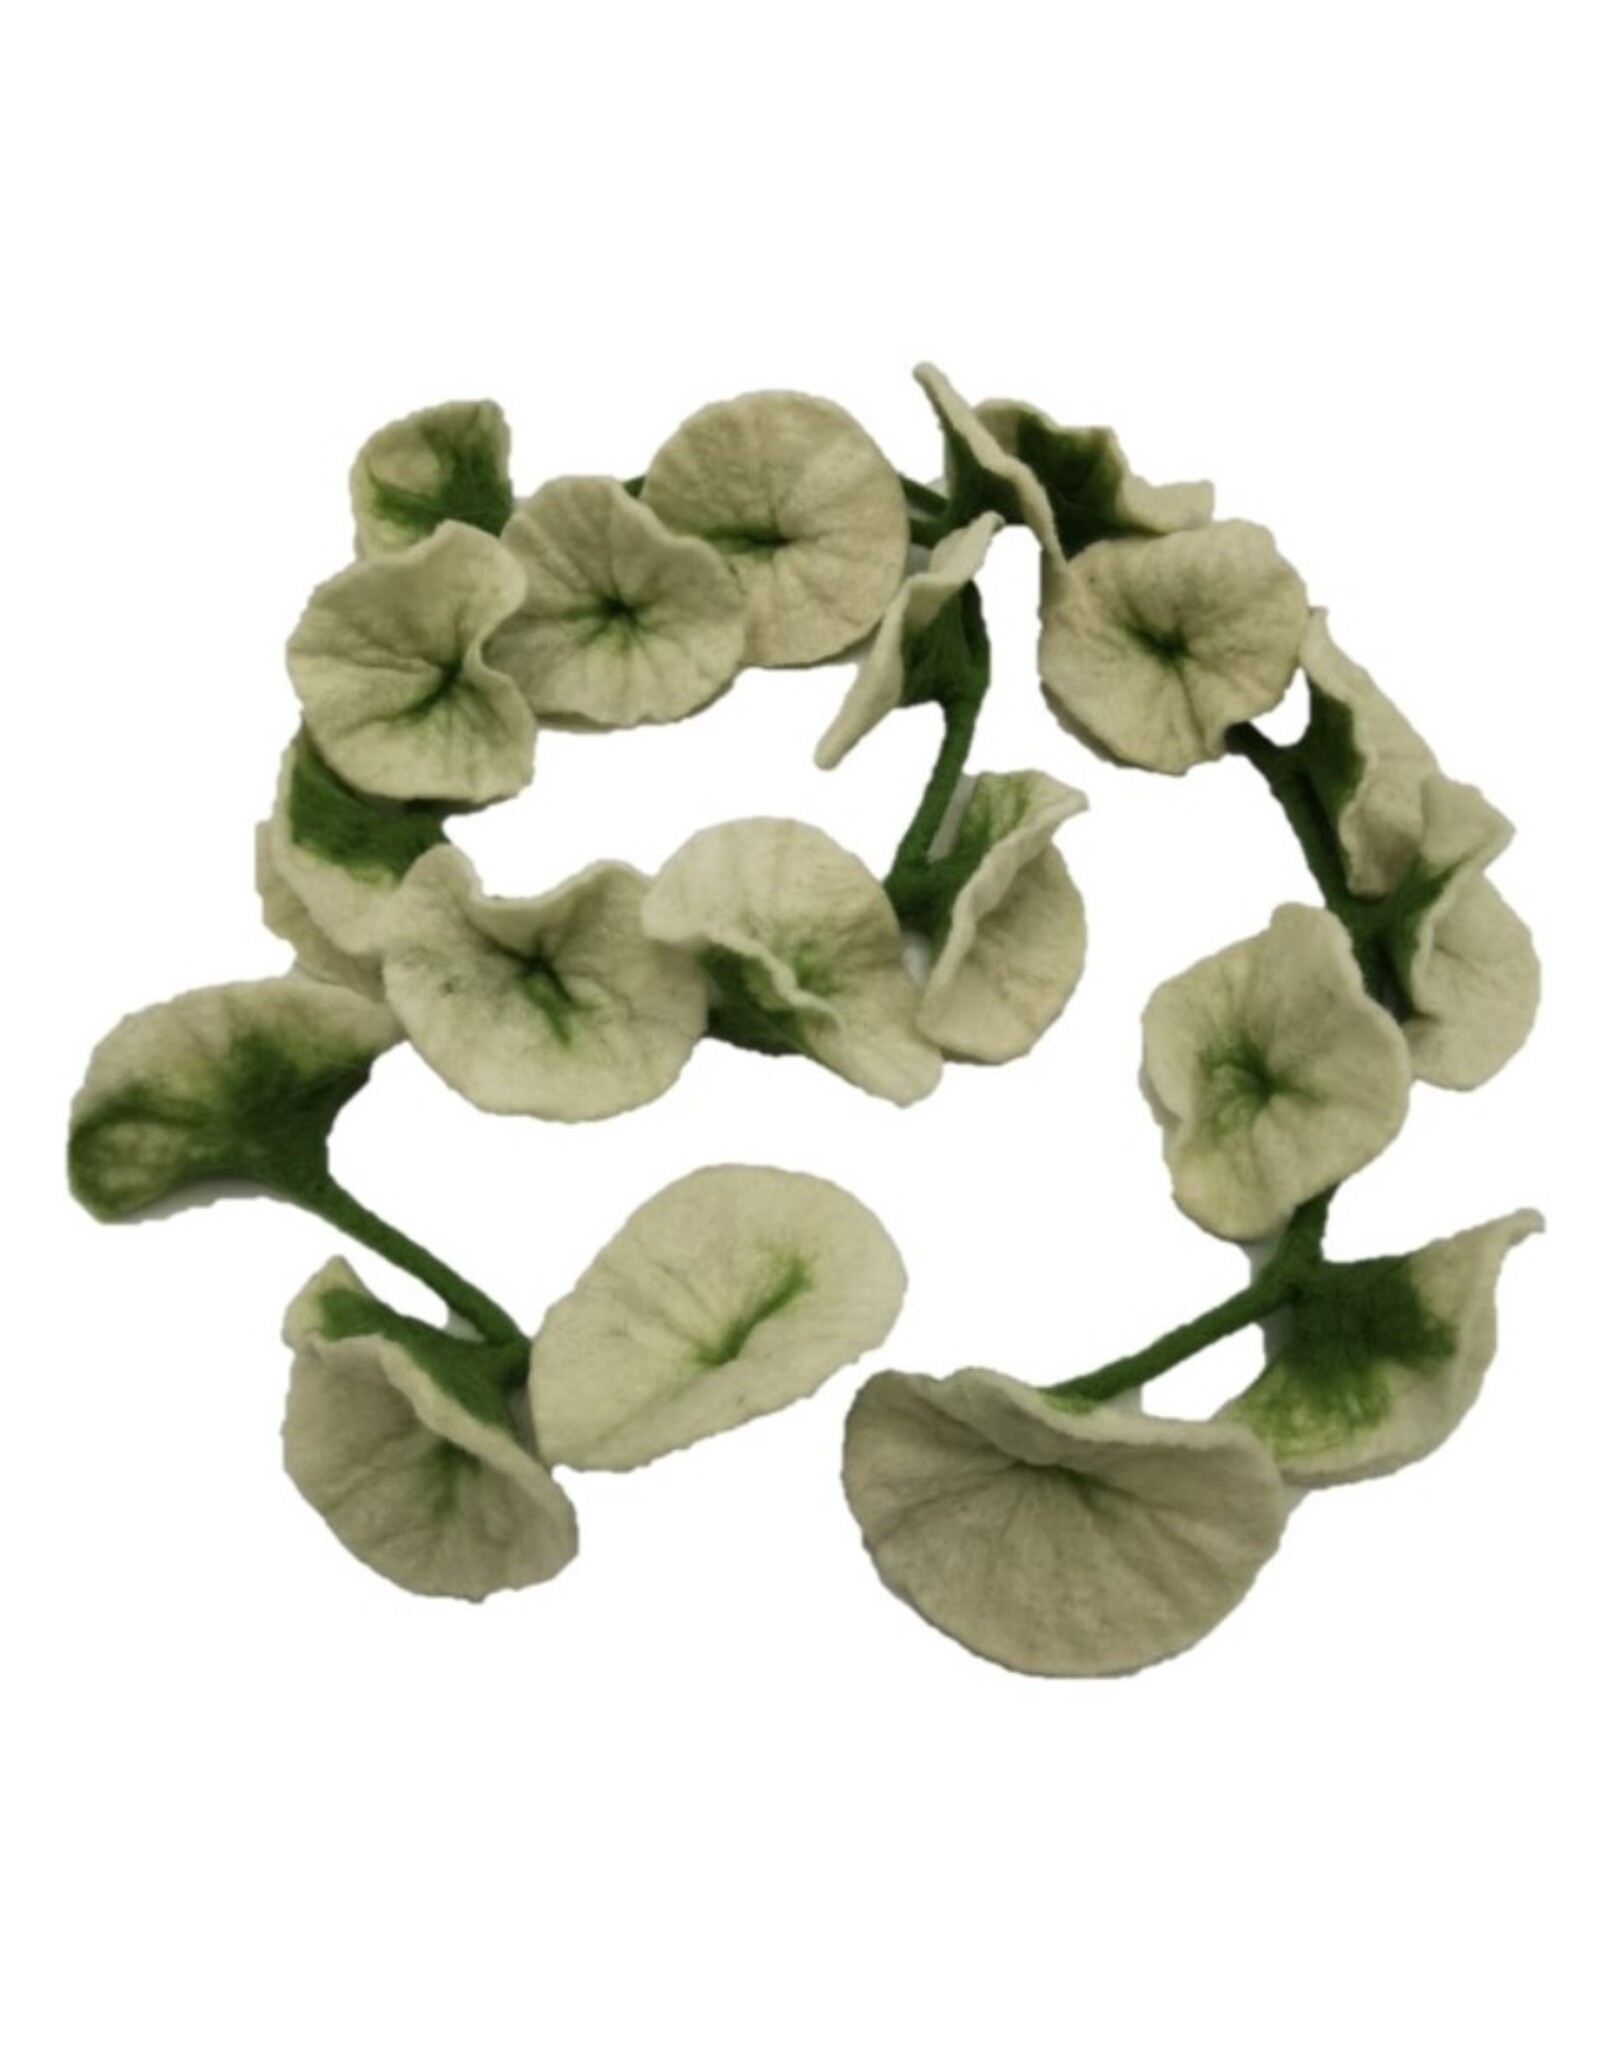 Trukado Miscellaneous - Felt Flowers Sling White handmade 180cm